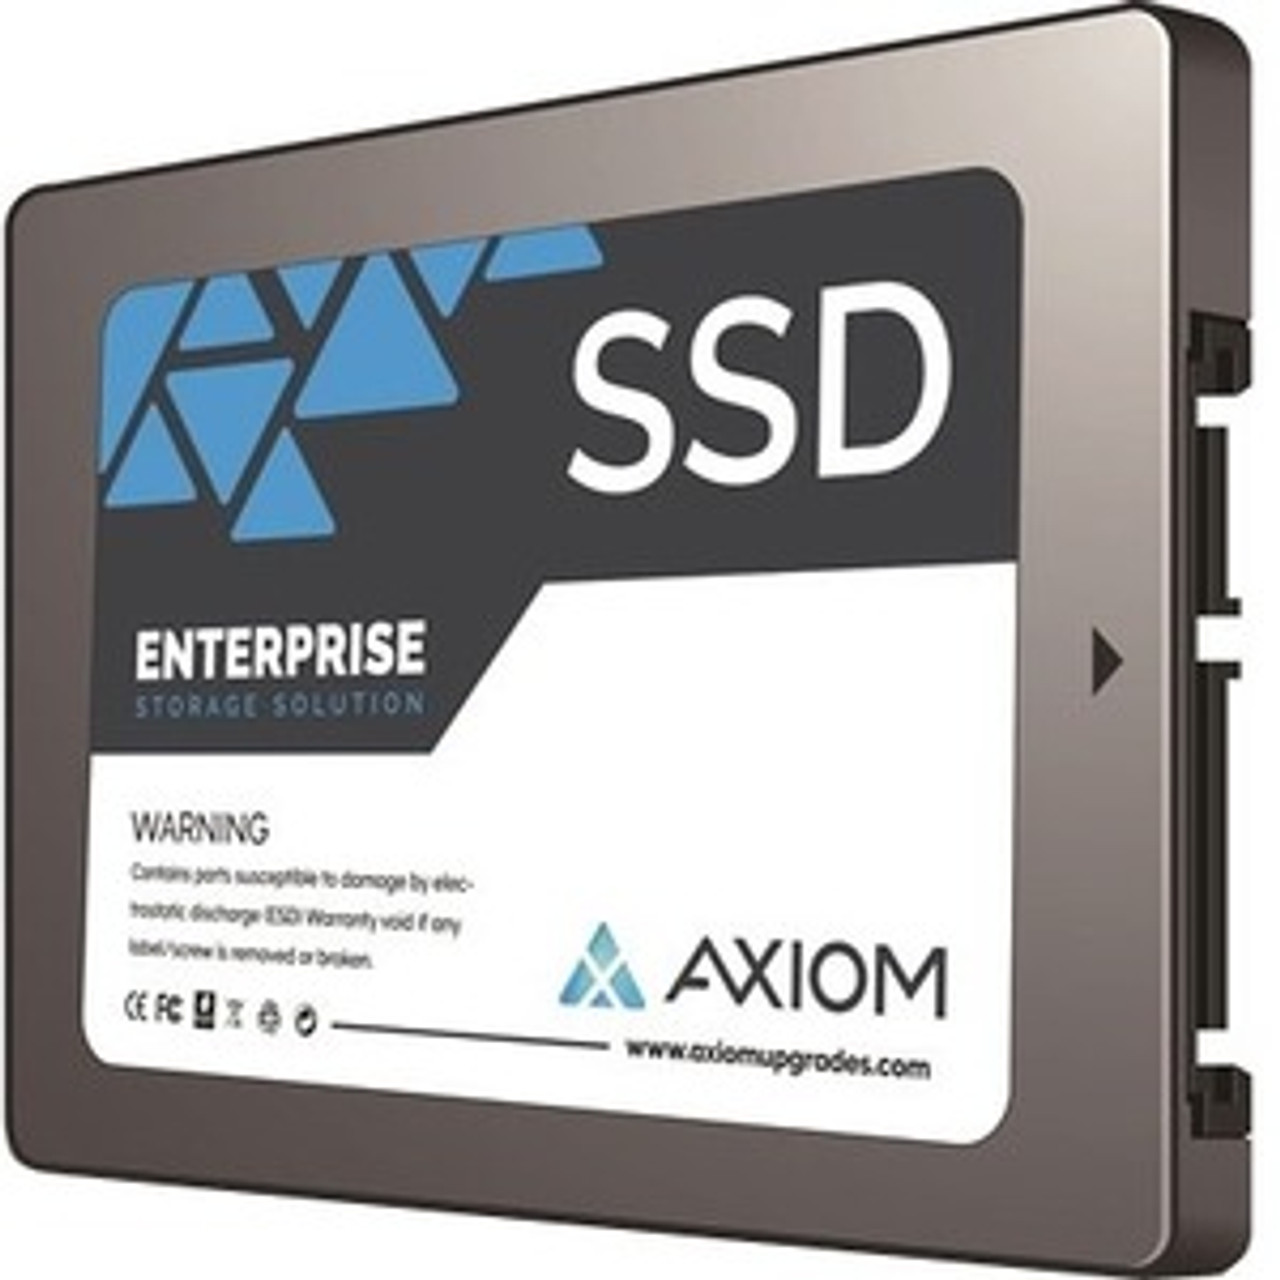 SSDEP55800-AX